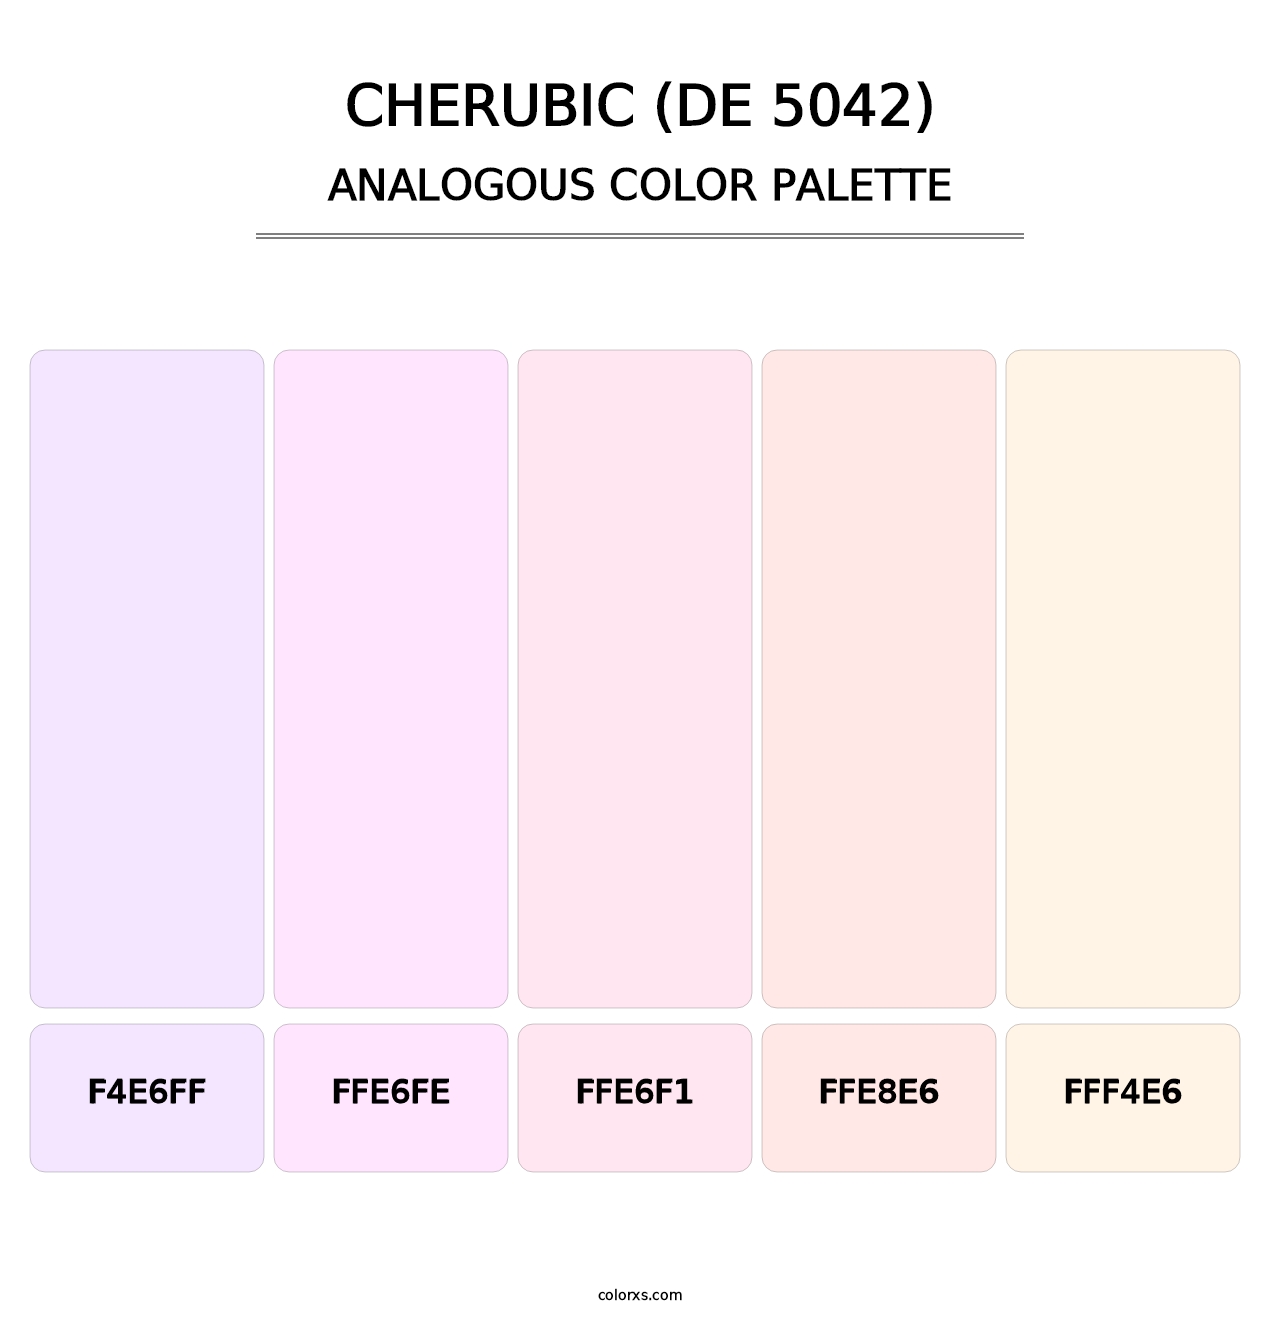 Cherubic (DE 5042) - Analogous Color Palette